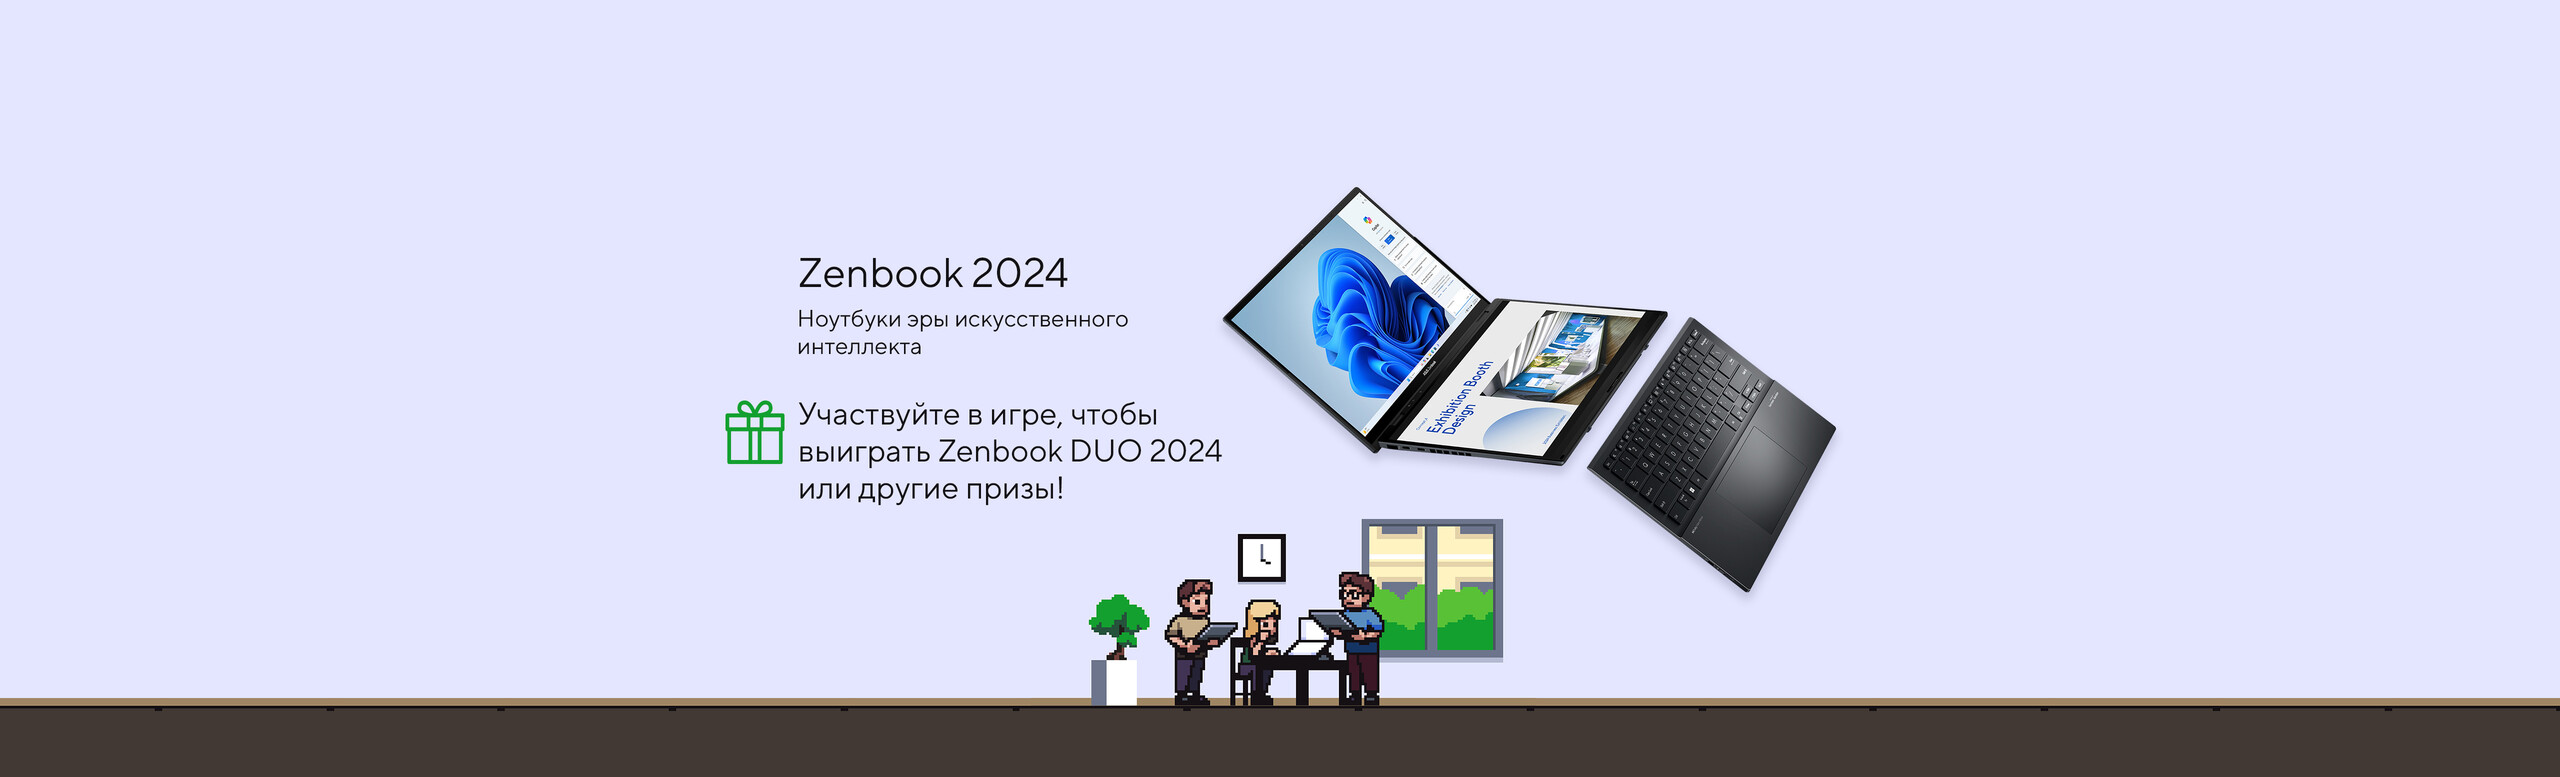 Играйте в игре, чтобы выиграть Zenbook Duo 2024 или другие призы!